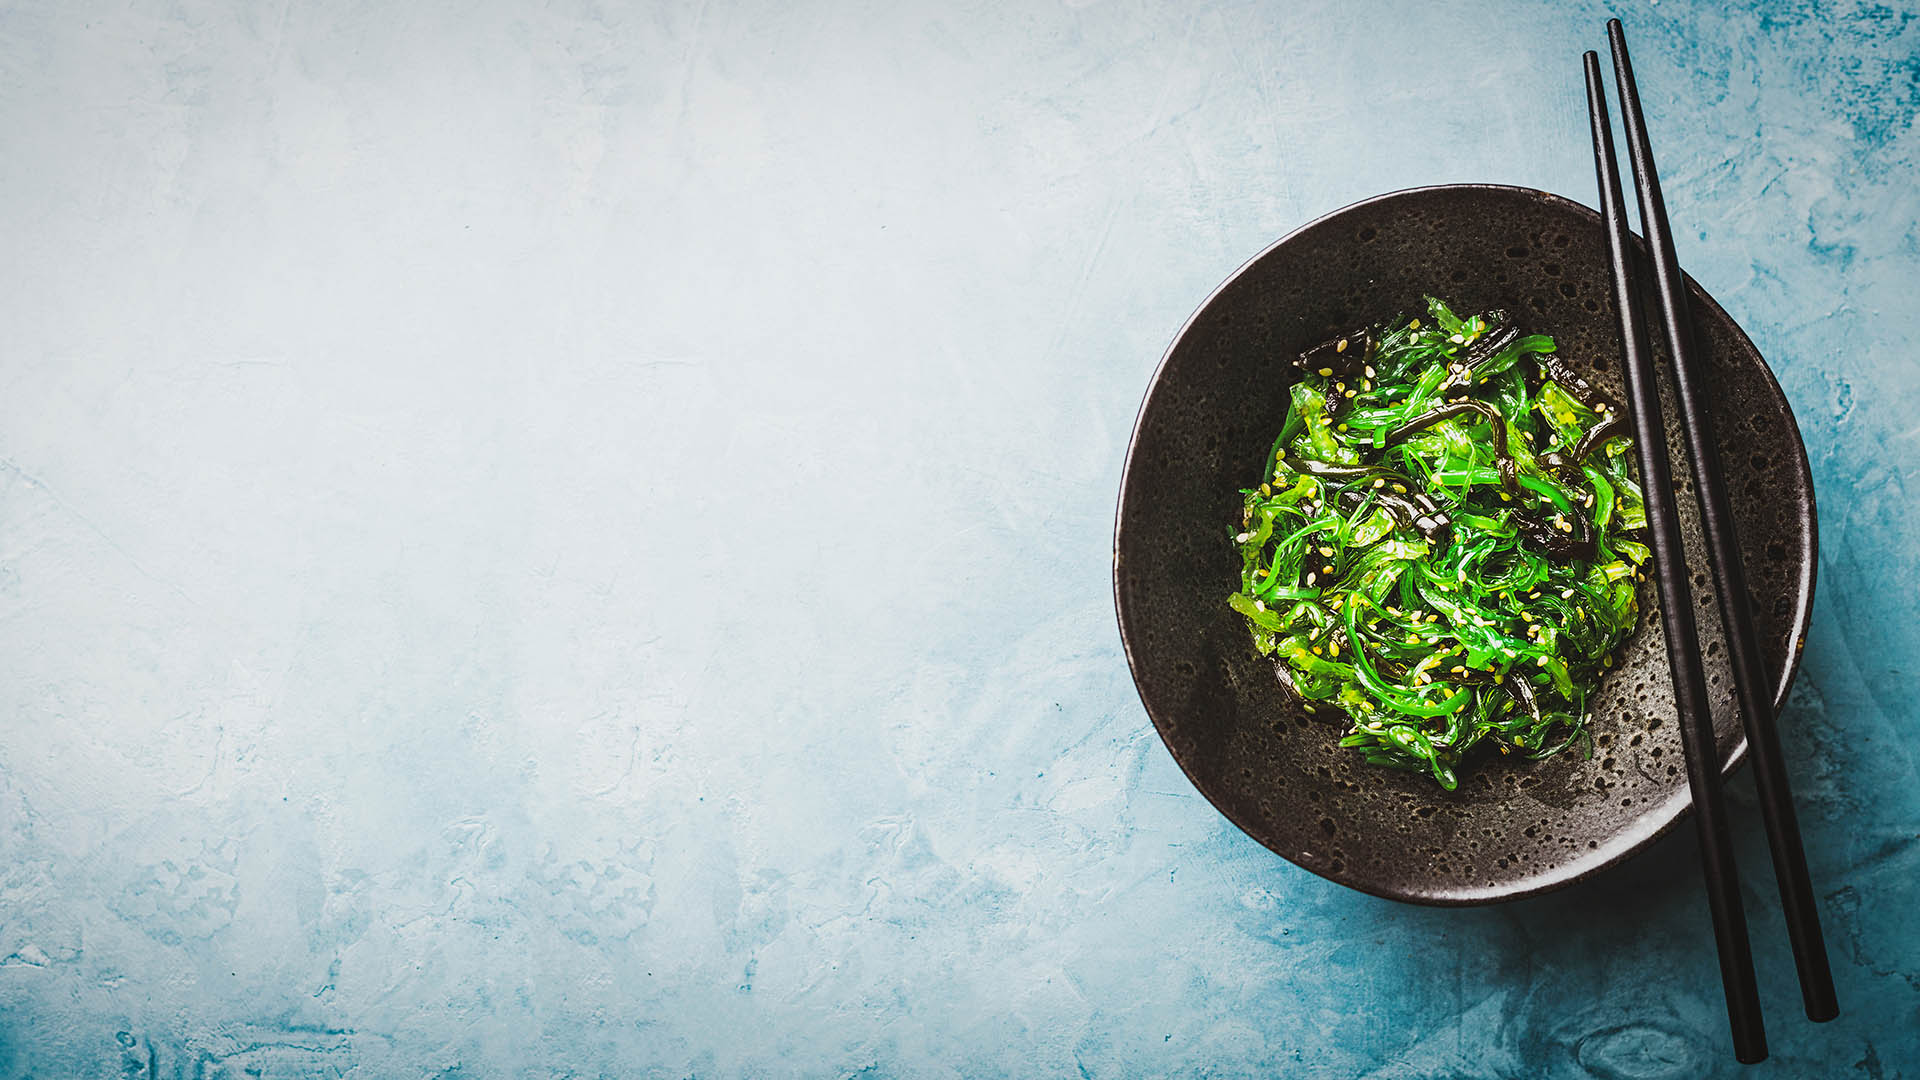 le alghe sono veri e propri super-alimenti. Ricche in oligoelementi possono diventare veri e propri piatti gourmet